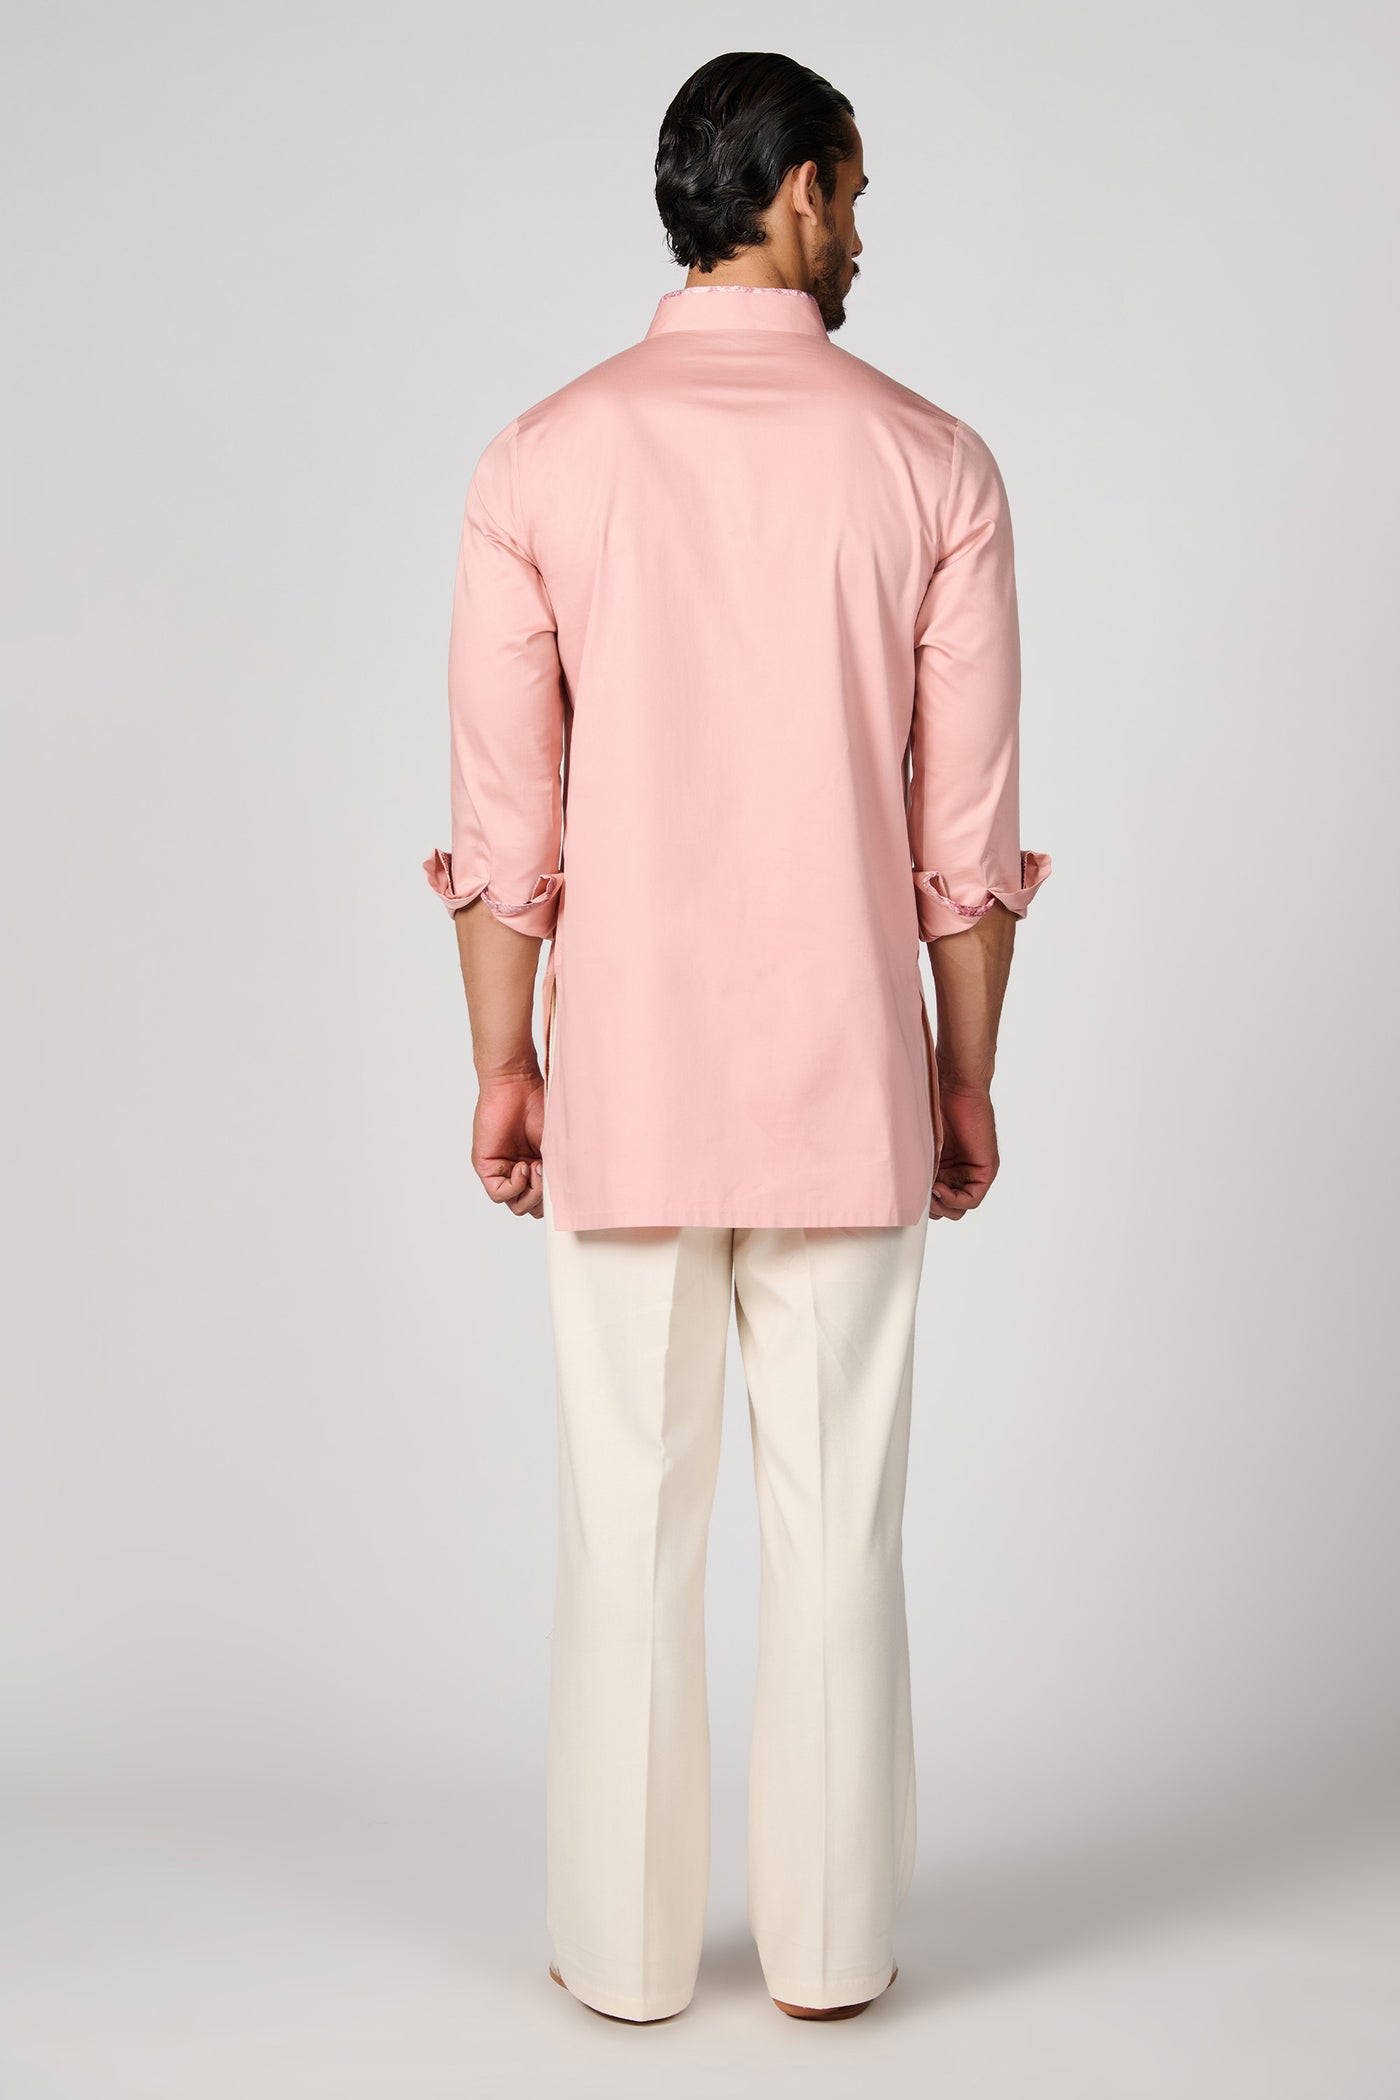 Shantanu & Nikhil Menswear Pink Crested Kurta indian designer wear online shopping melange singapore